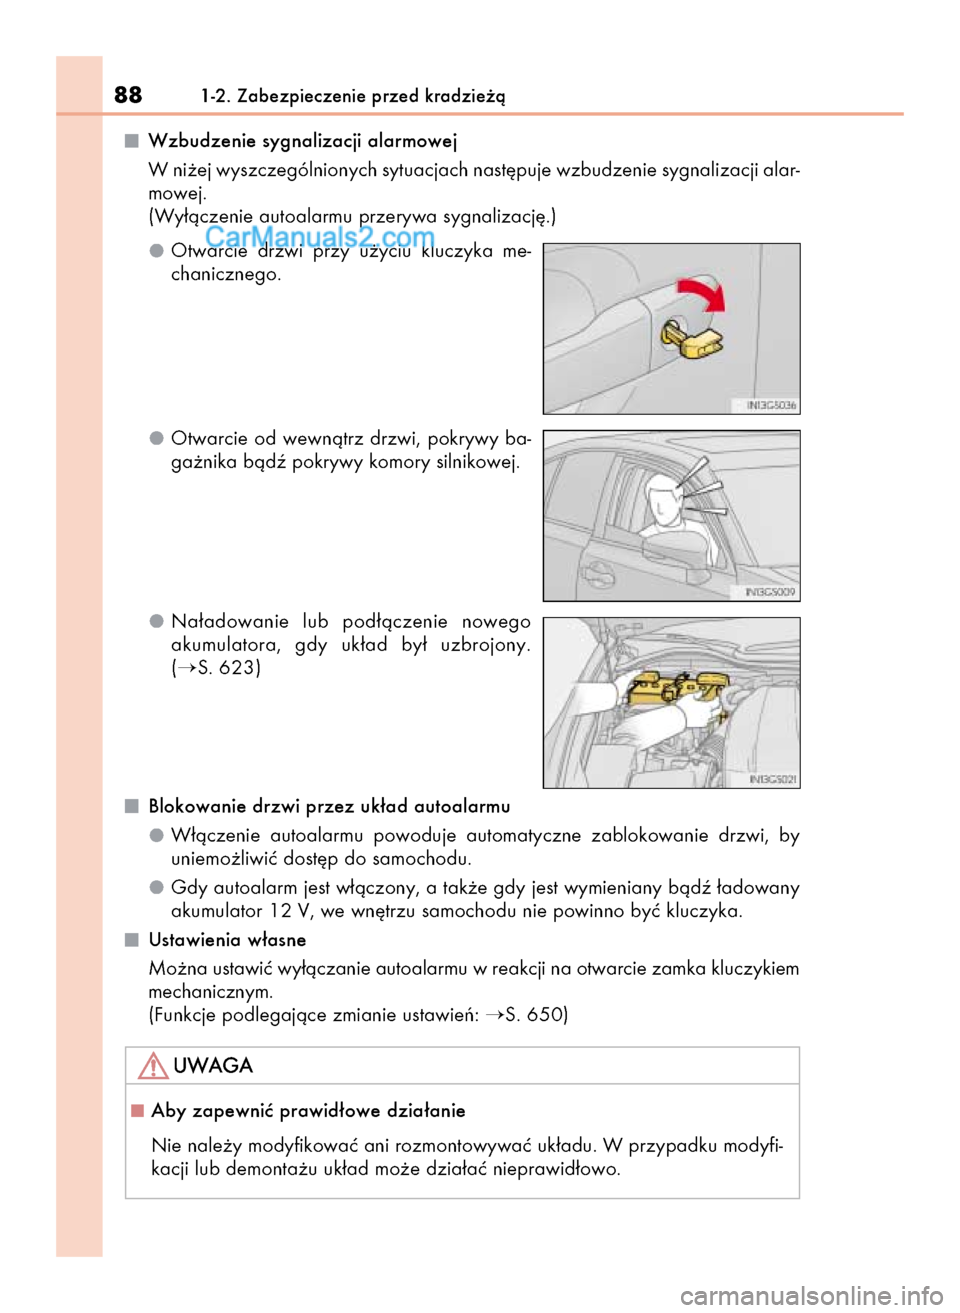 Lexus GS250 2014  Instrukcja Obsługi (in Polish) Wzbudzenie sygnalizacji alarmowej
W ni˝ej wyszczególnionych sytuacjach nast´puje wzbudzenie sygnalizacji alar-
mowej. 
(Wy∏àczenie autoalarmu przerywa sygnalizacj´.)
Otwarcie  drzwi  przy  u˝y